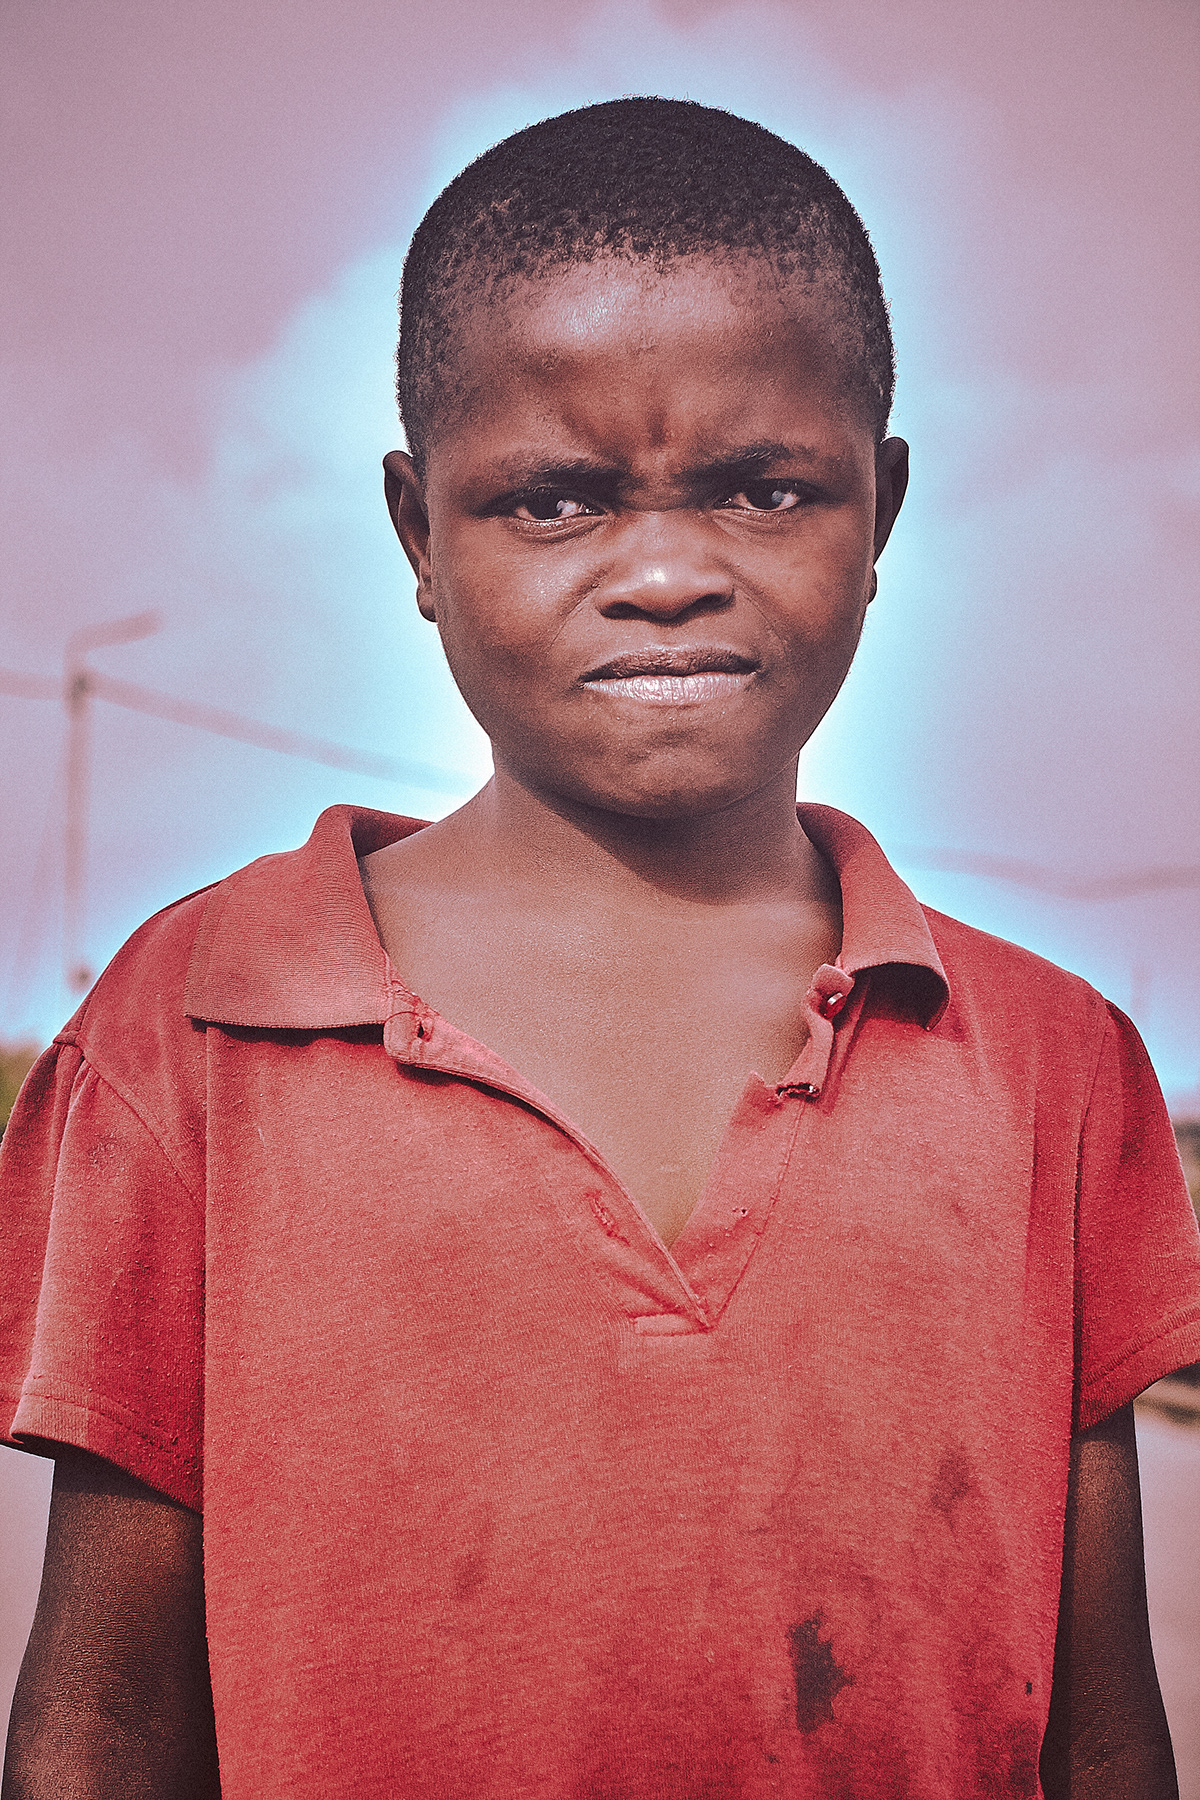 #africa #congo #rdc #Goma #children #Street children